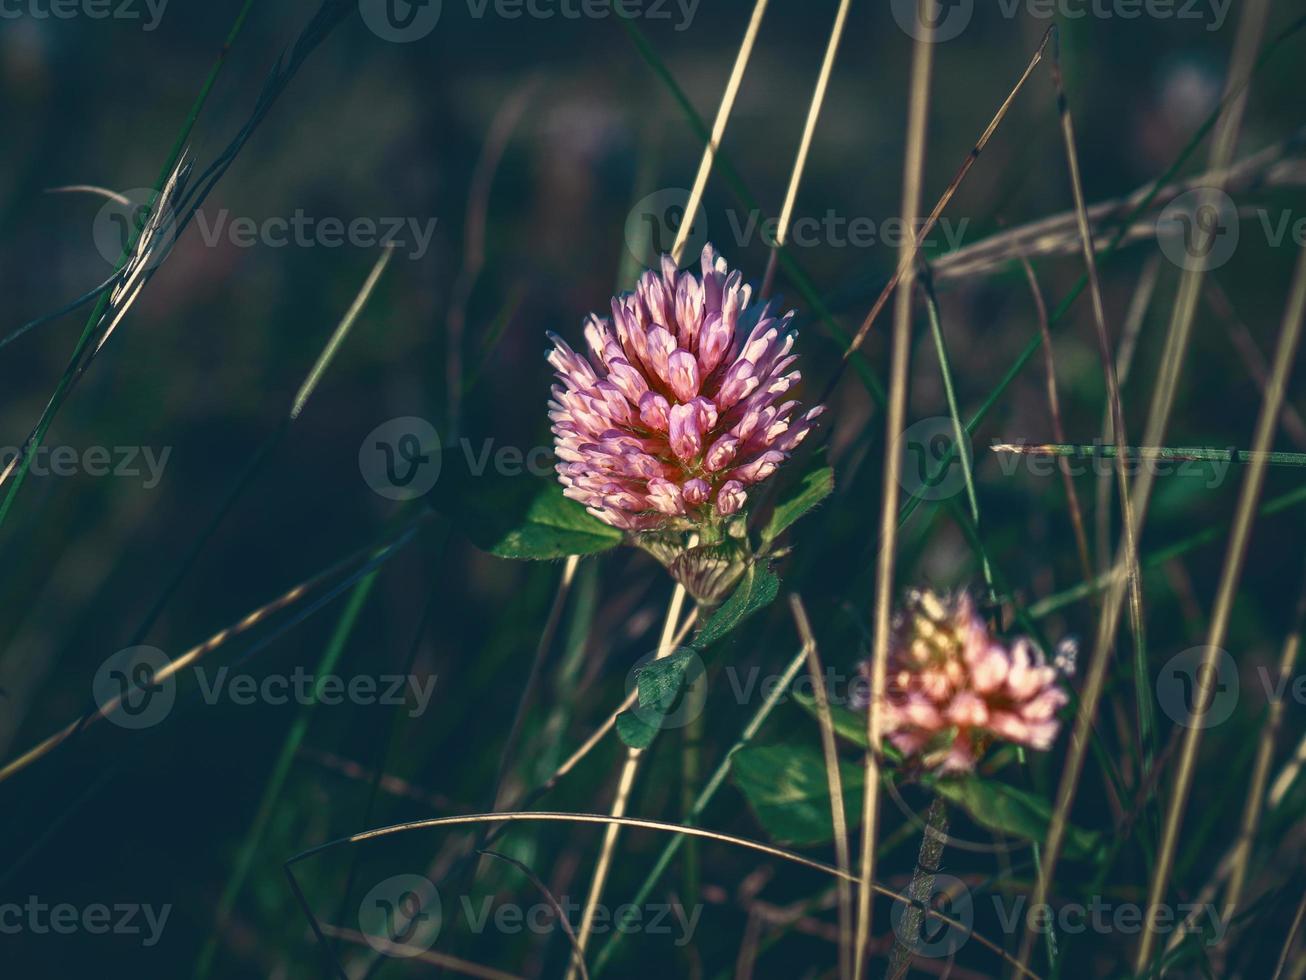 rosa klöverblomma i blom i högt gräs på mörk gräsbevuxen bakgrund foto